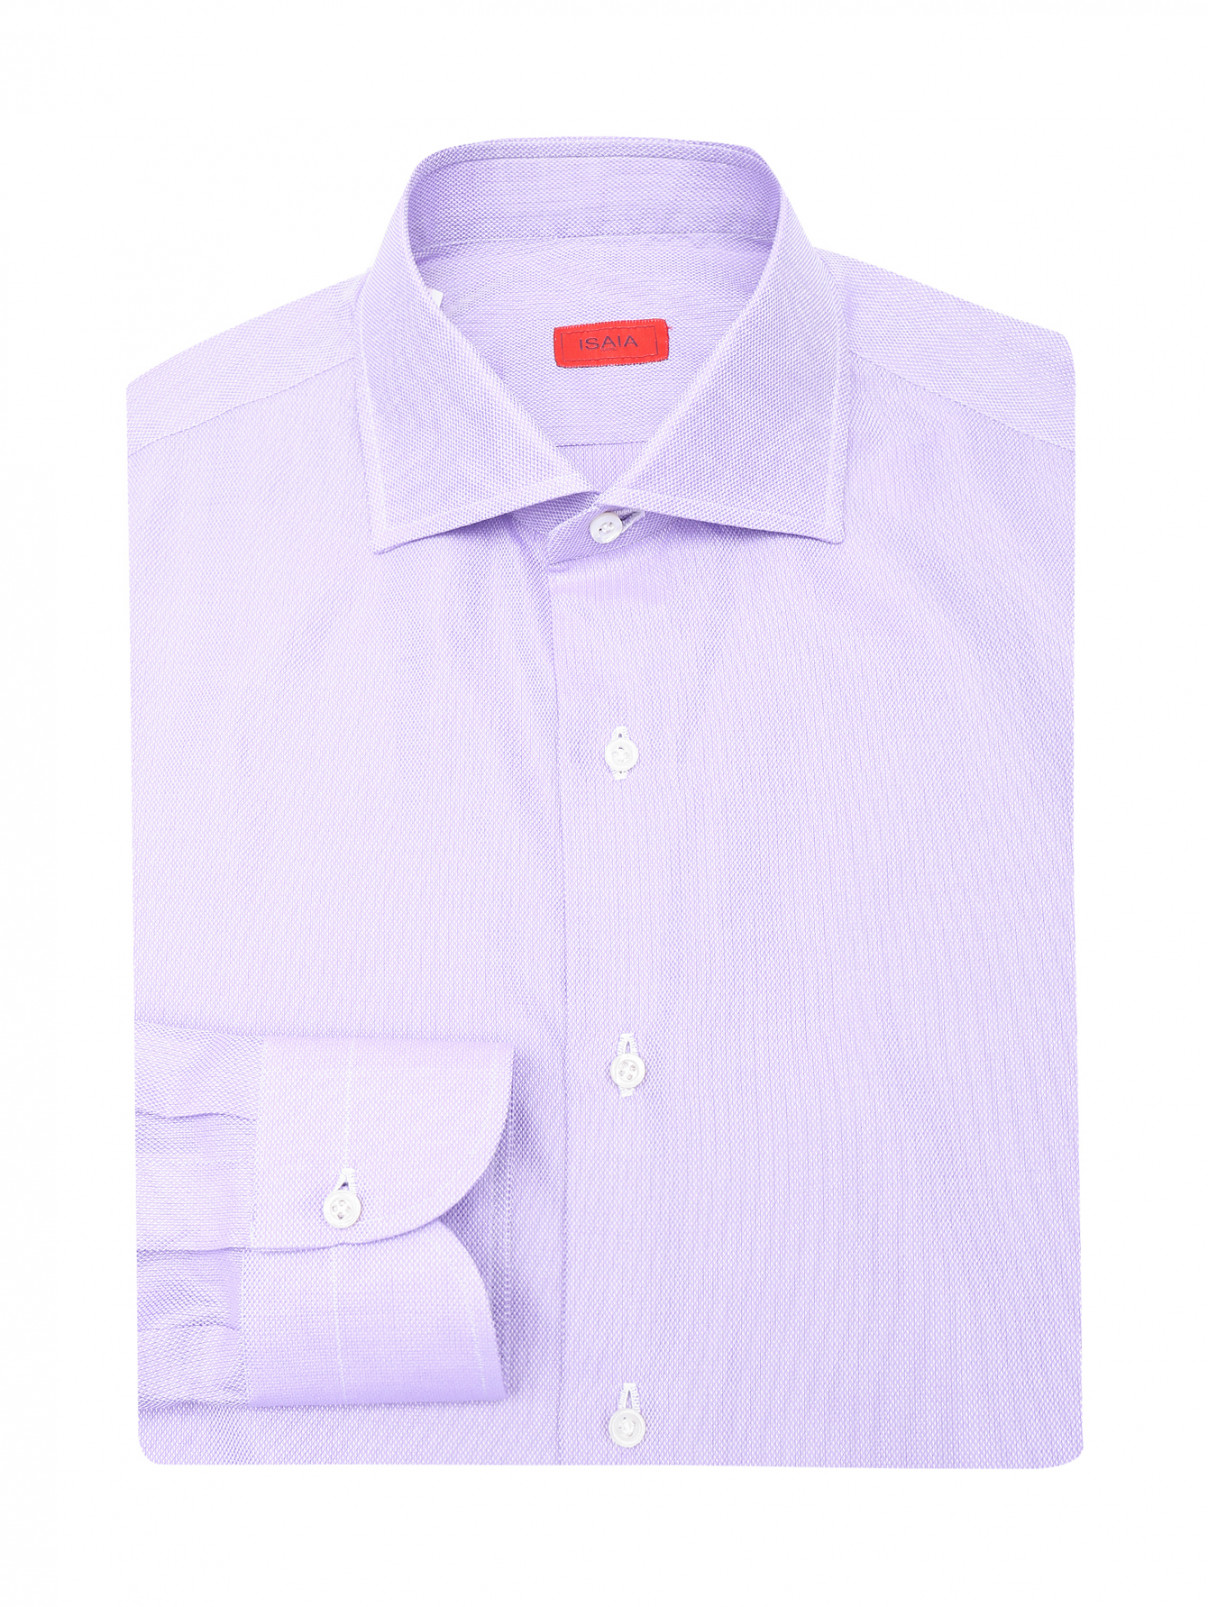 Рубашка из хлопка на пуговицах Isaia  –  Общий вид  – Цвет:  Фиолетовый